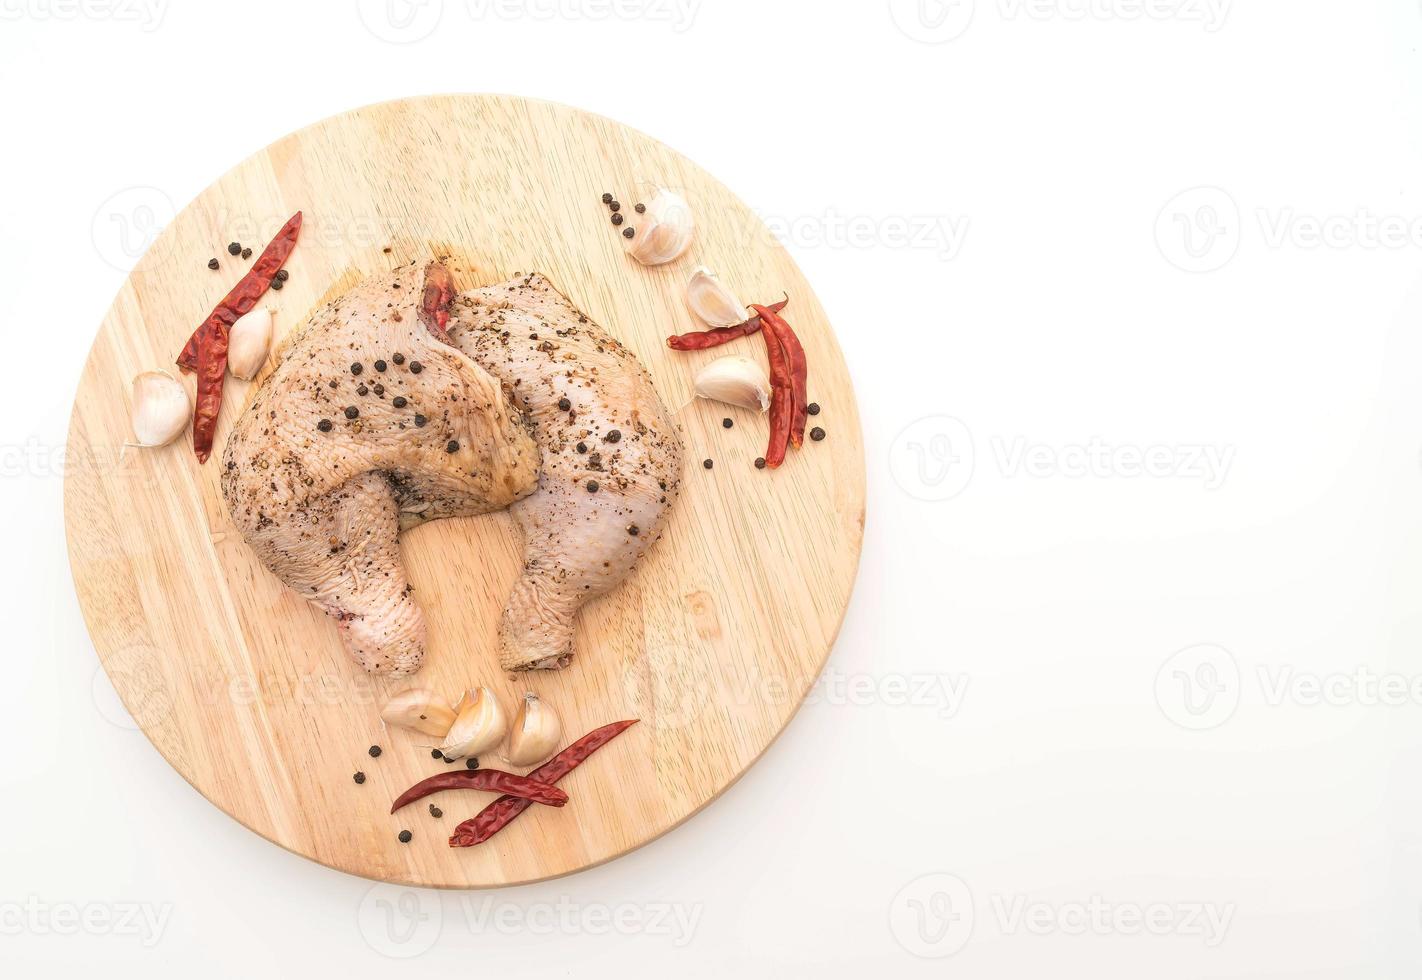 Coxa de frango marinado com molho, pimenta preta, alho e pimenta seca na tábua de madeira foto